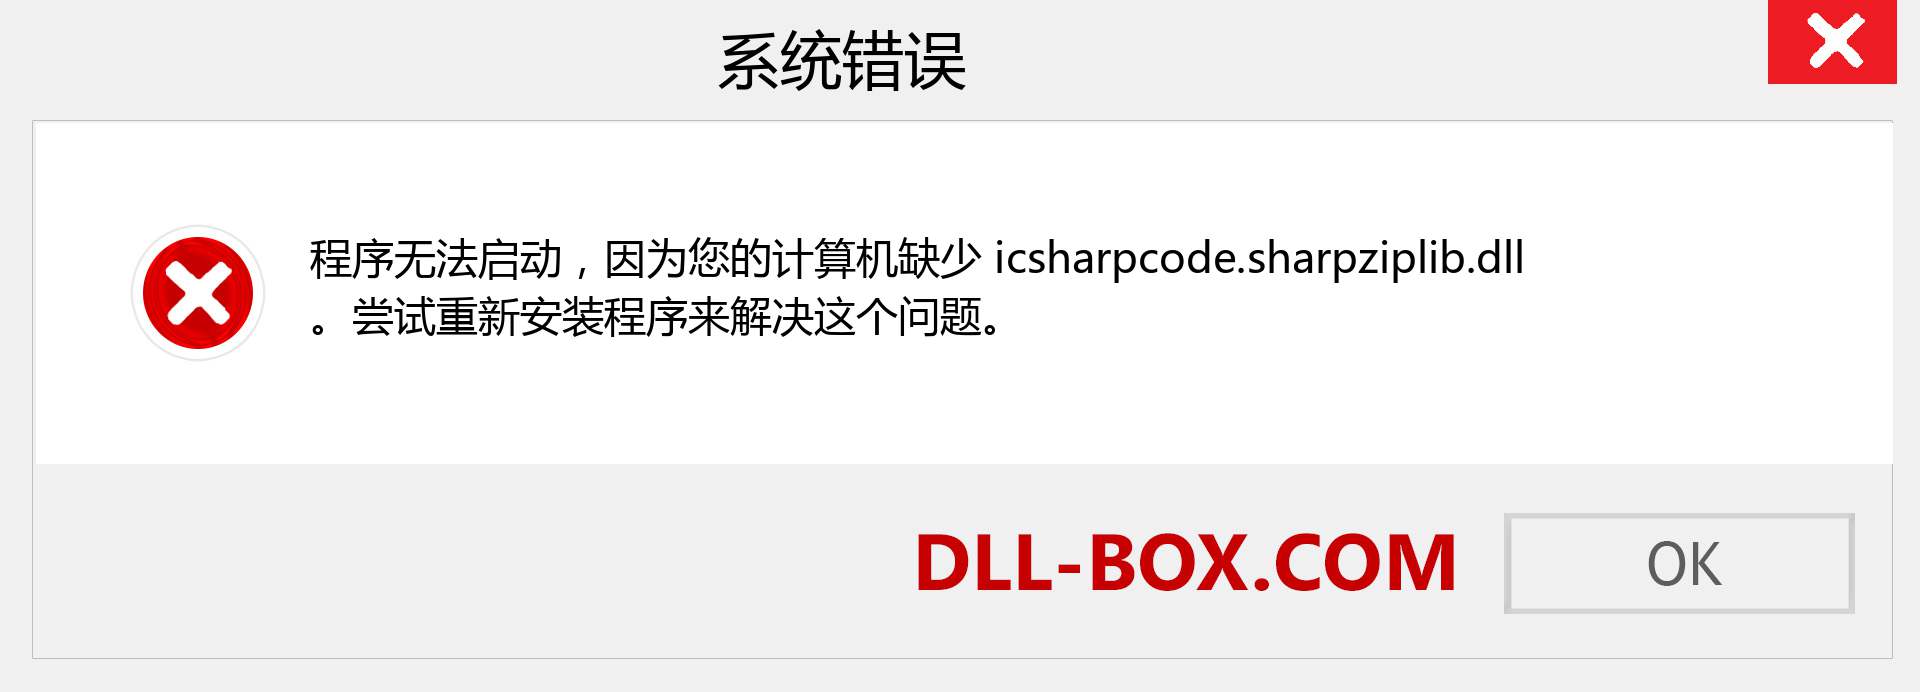 icsharpcode.sharpziplib.dll 文件丢失？。 适用于 Windows 7、8、10 的下载 - 修复 Windows、照片、图像上的 icsharpcode.sharpziplib dll 丢失错误